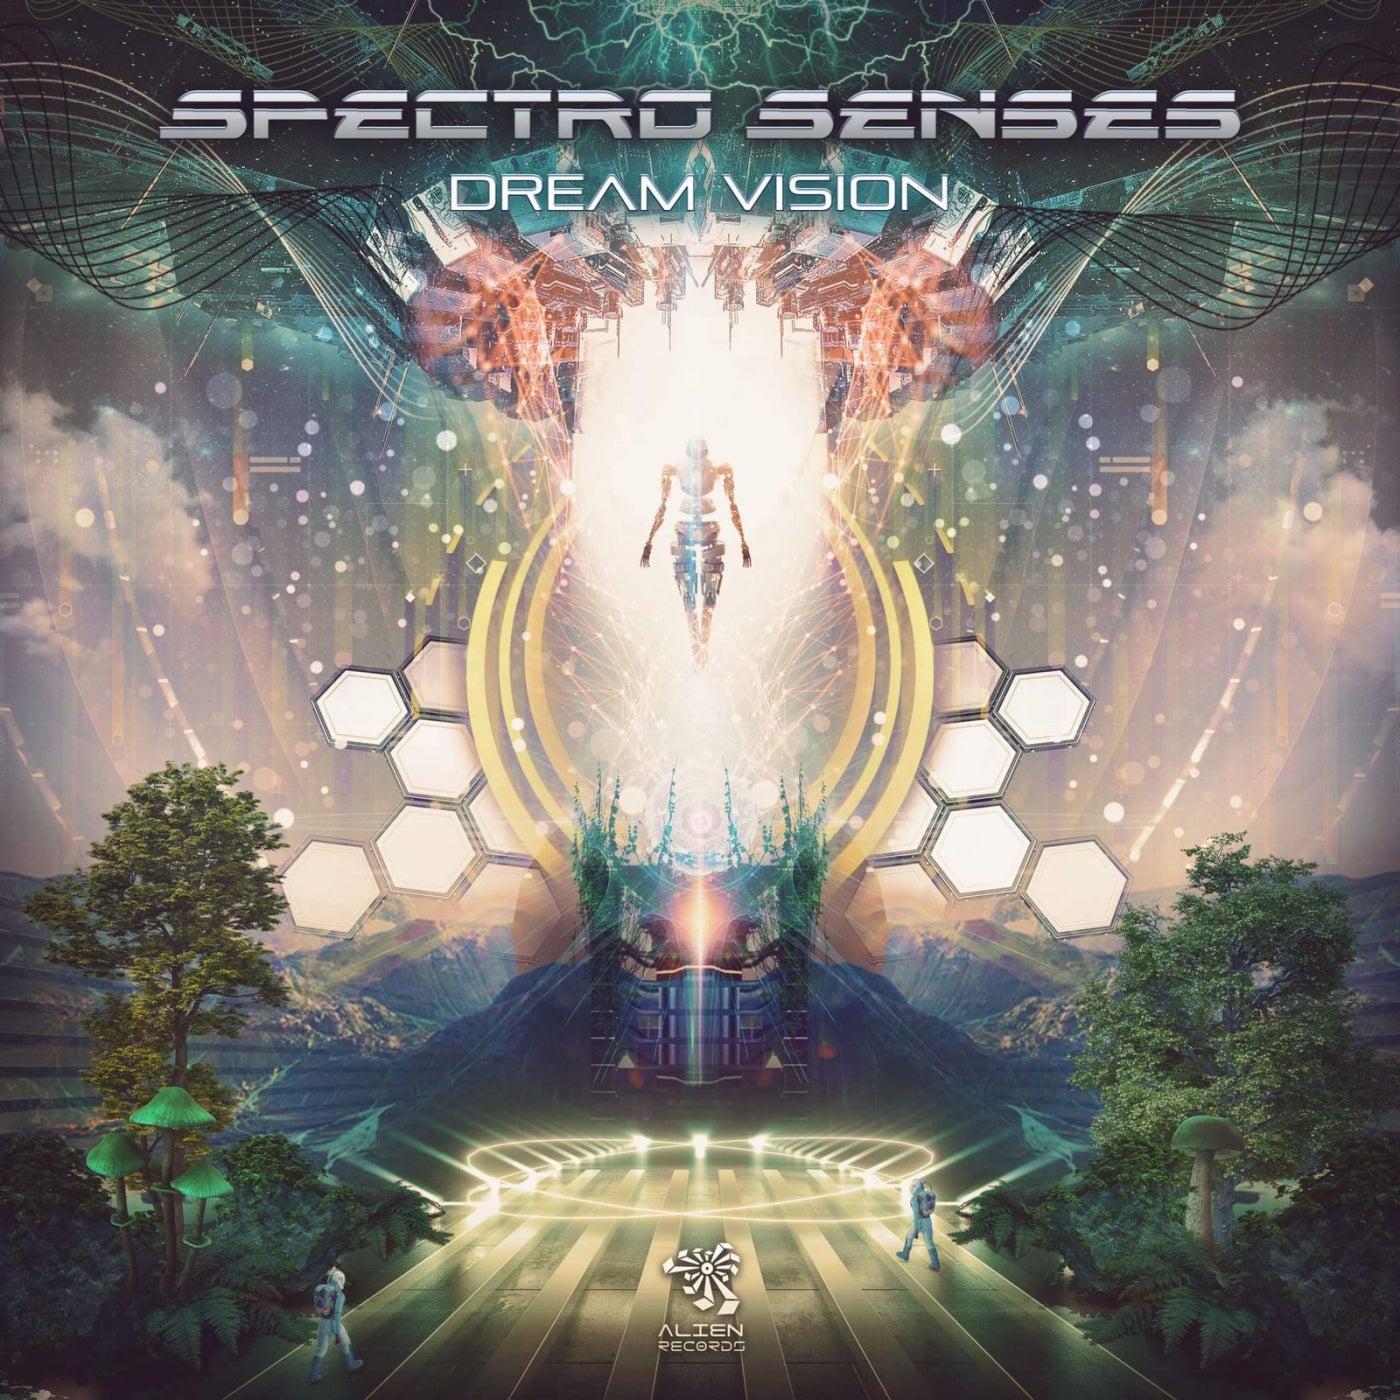 Spectro Senses & Hyde, Spectro Senses & Kbyte - Dream Vision [Alien Records]